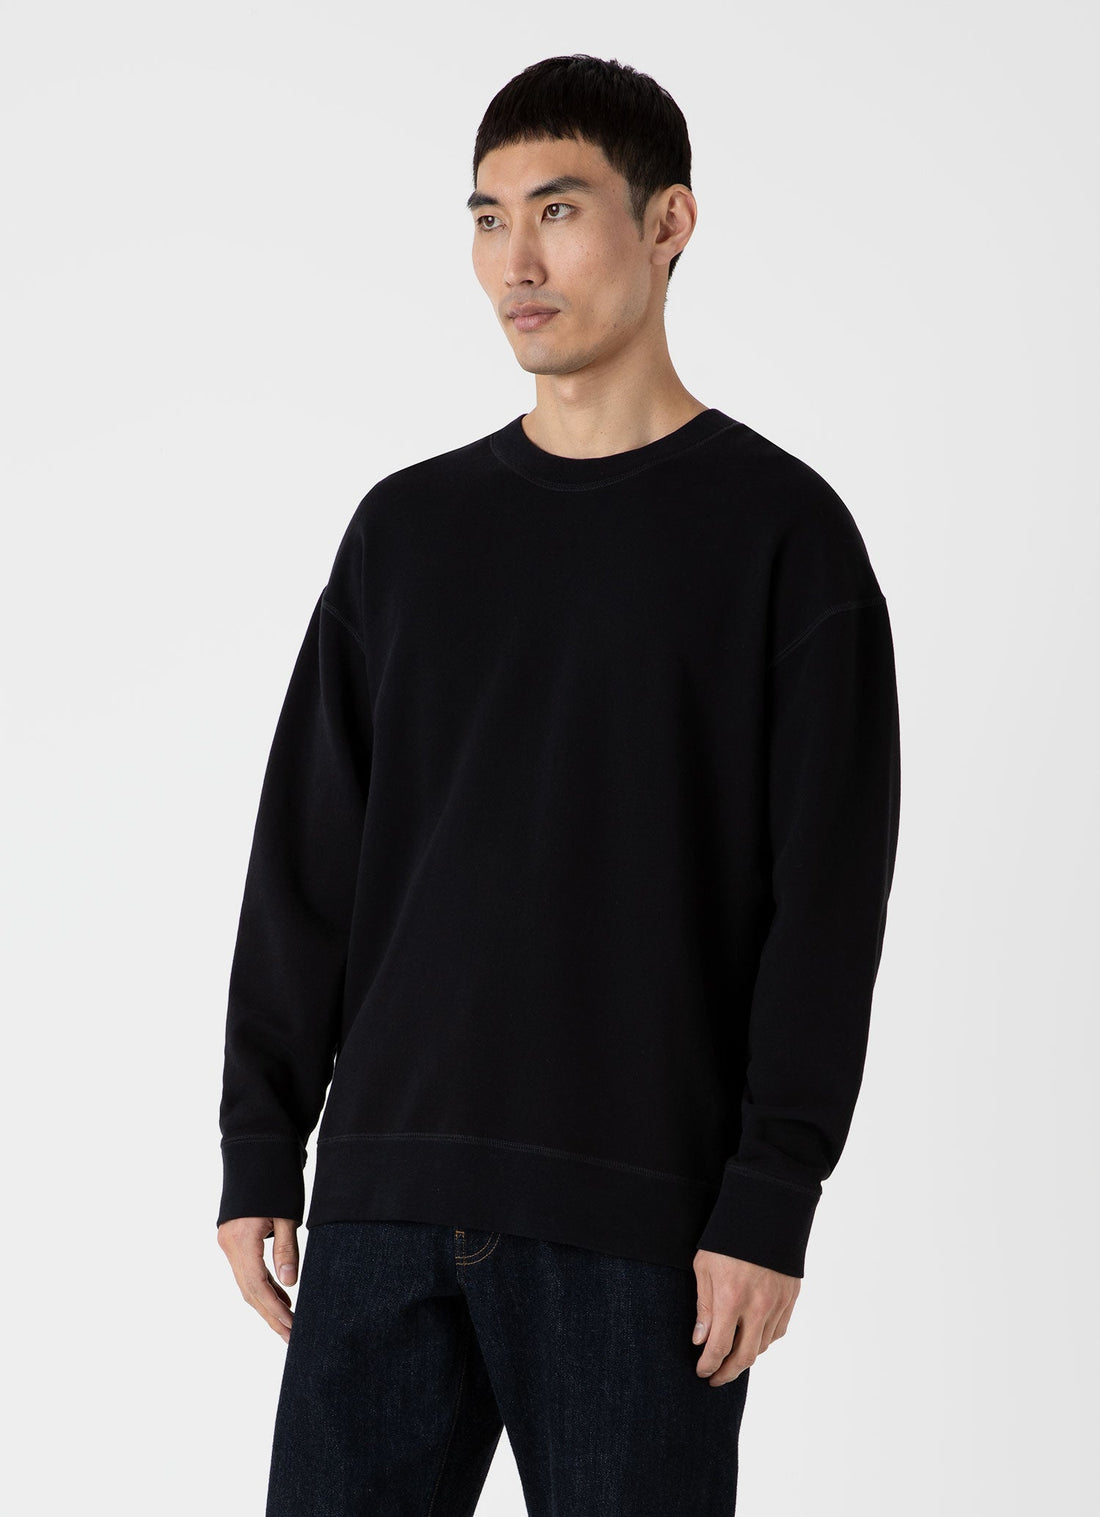 Men's Oversized Loopback Sweatshirt in Black